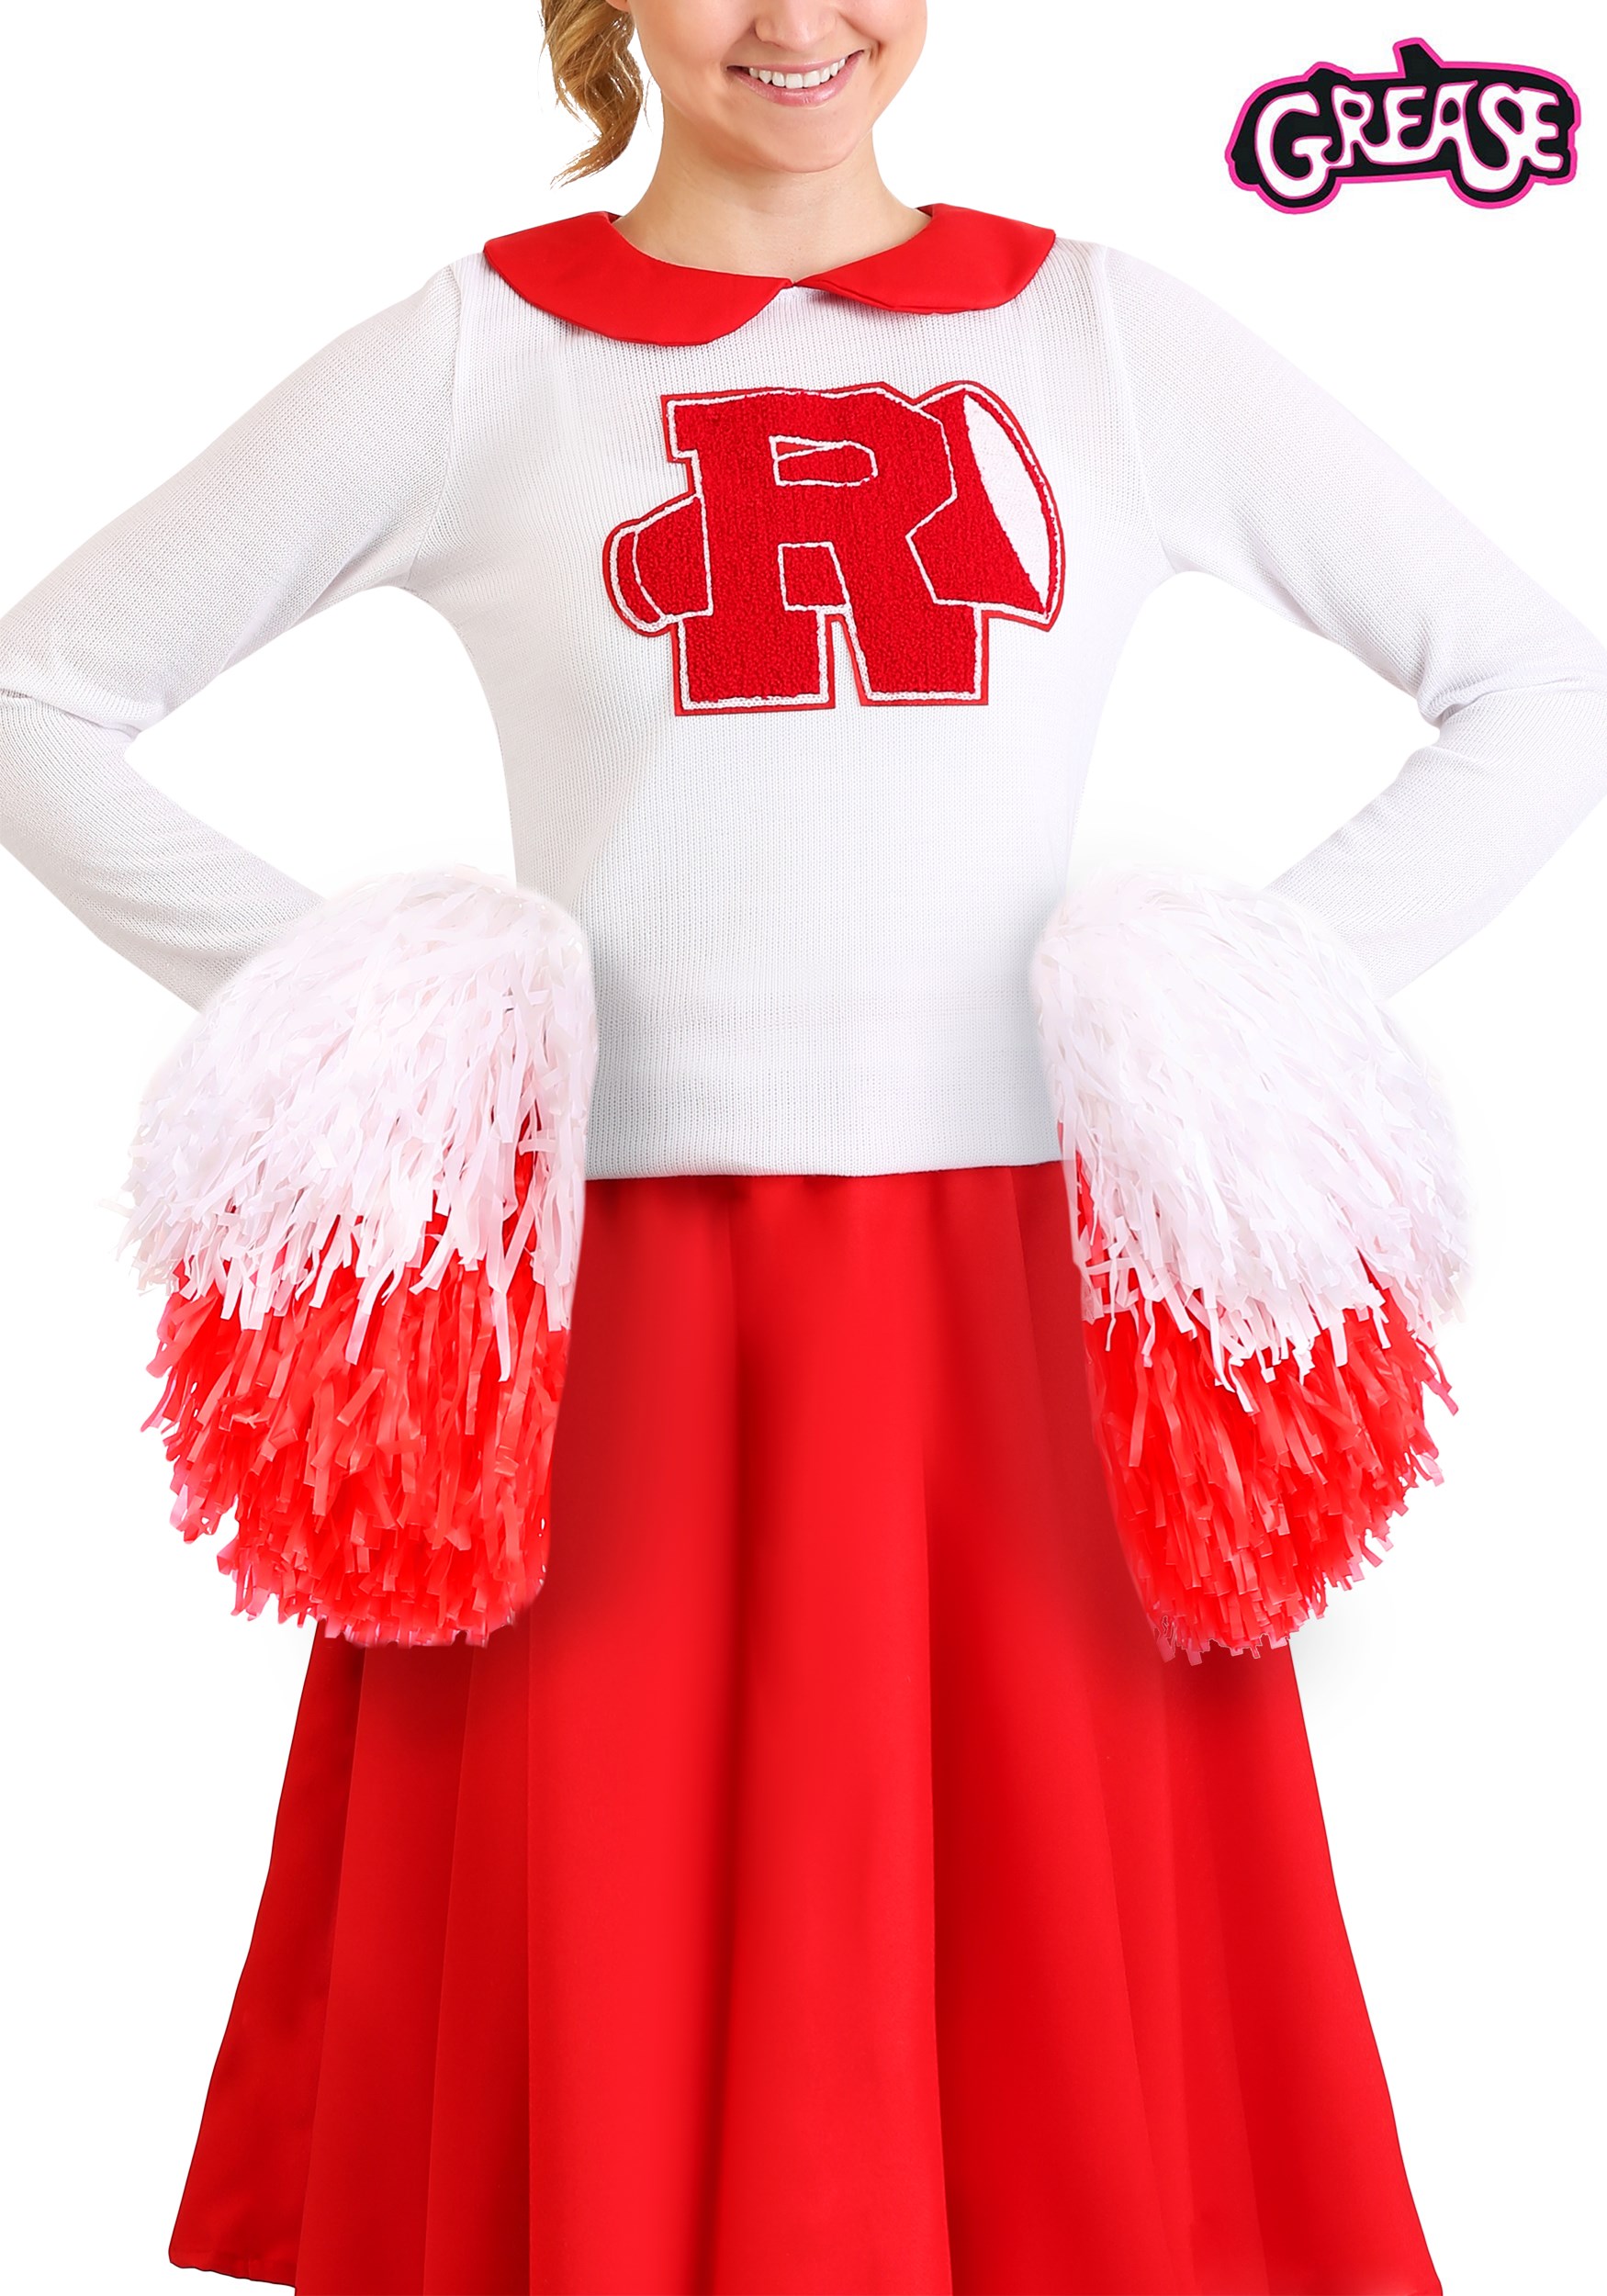 grease-rydell-high-cheerleader-pompoms.jpg